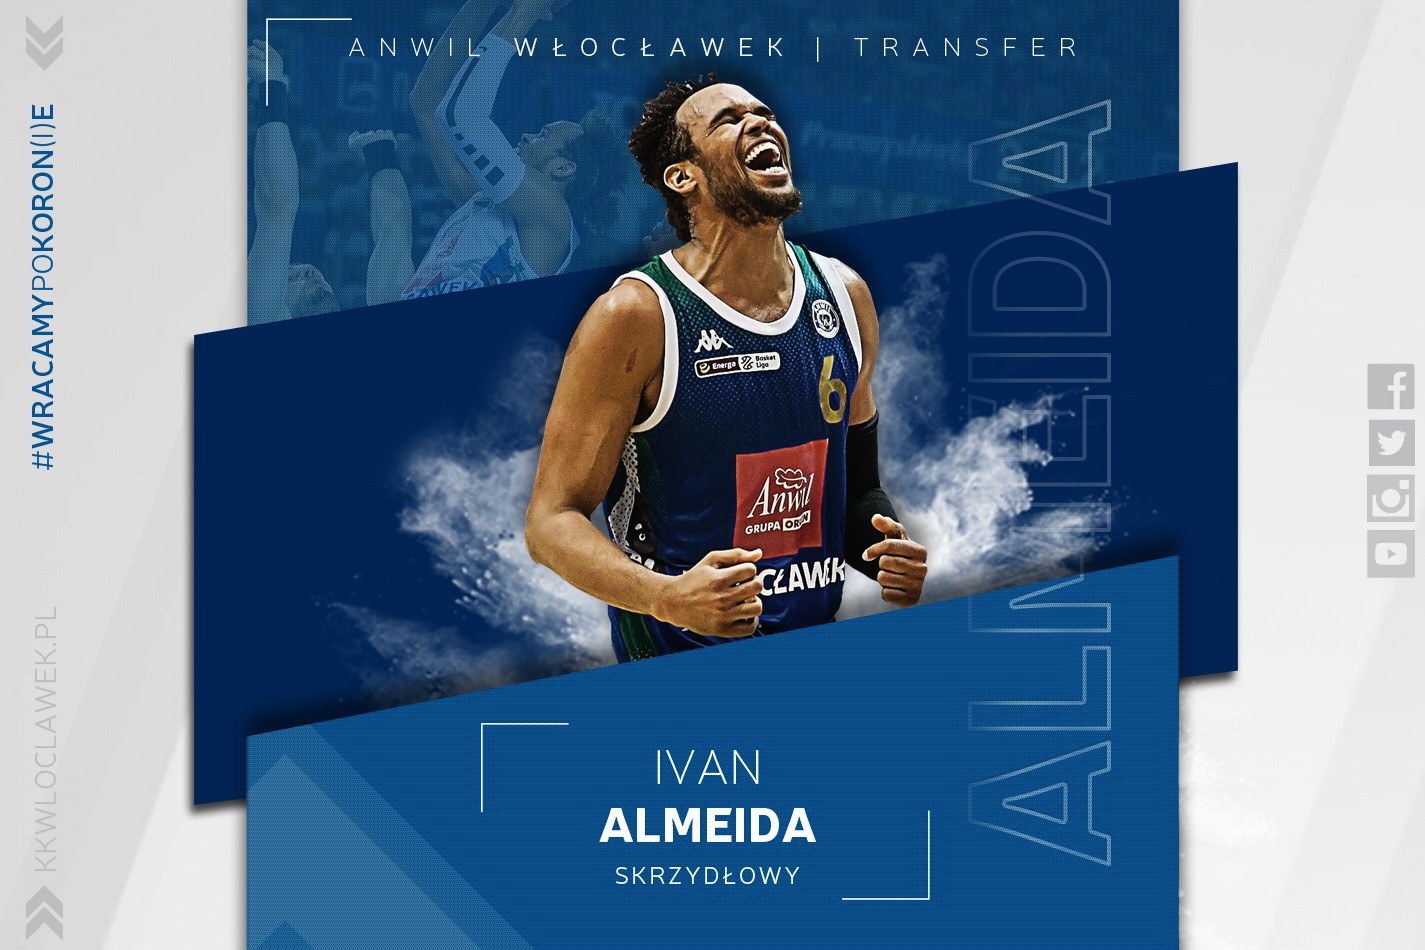 Ivan Back to Back Almeida!